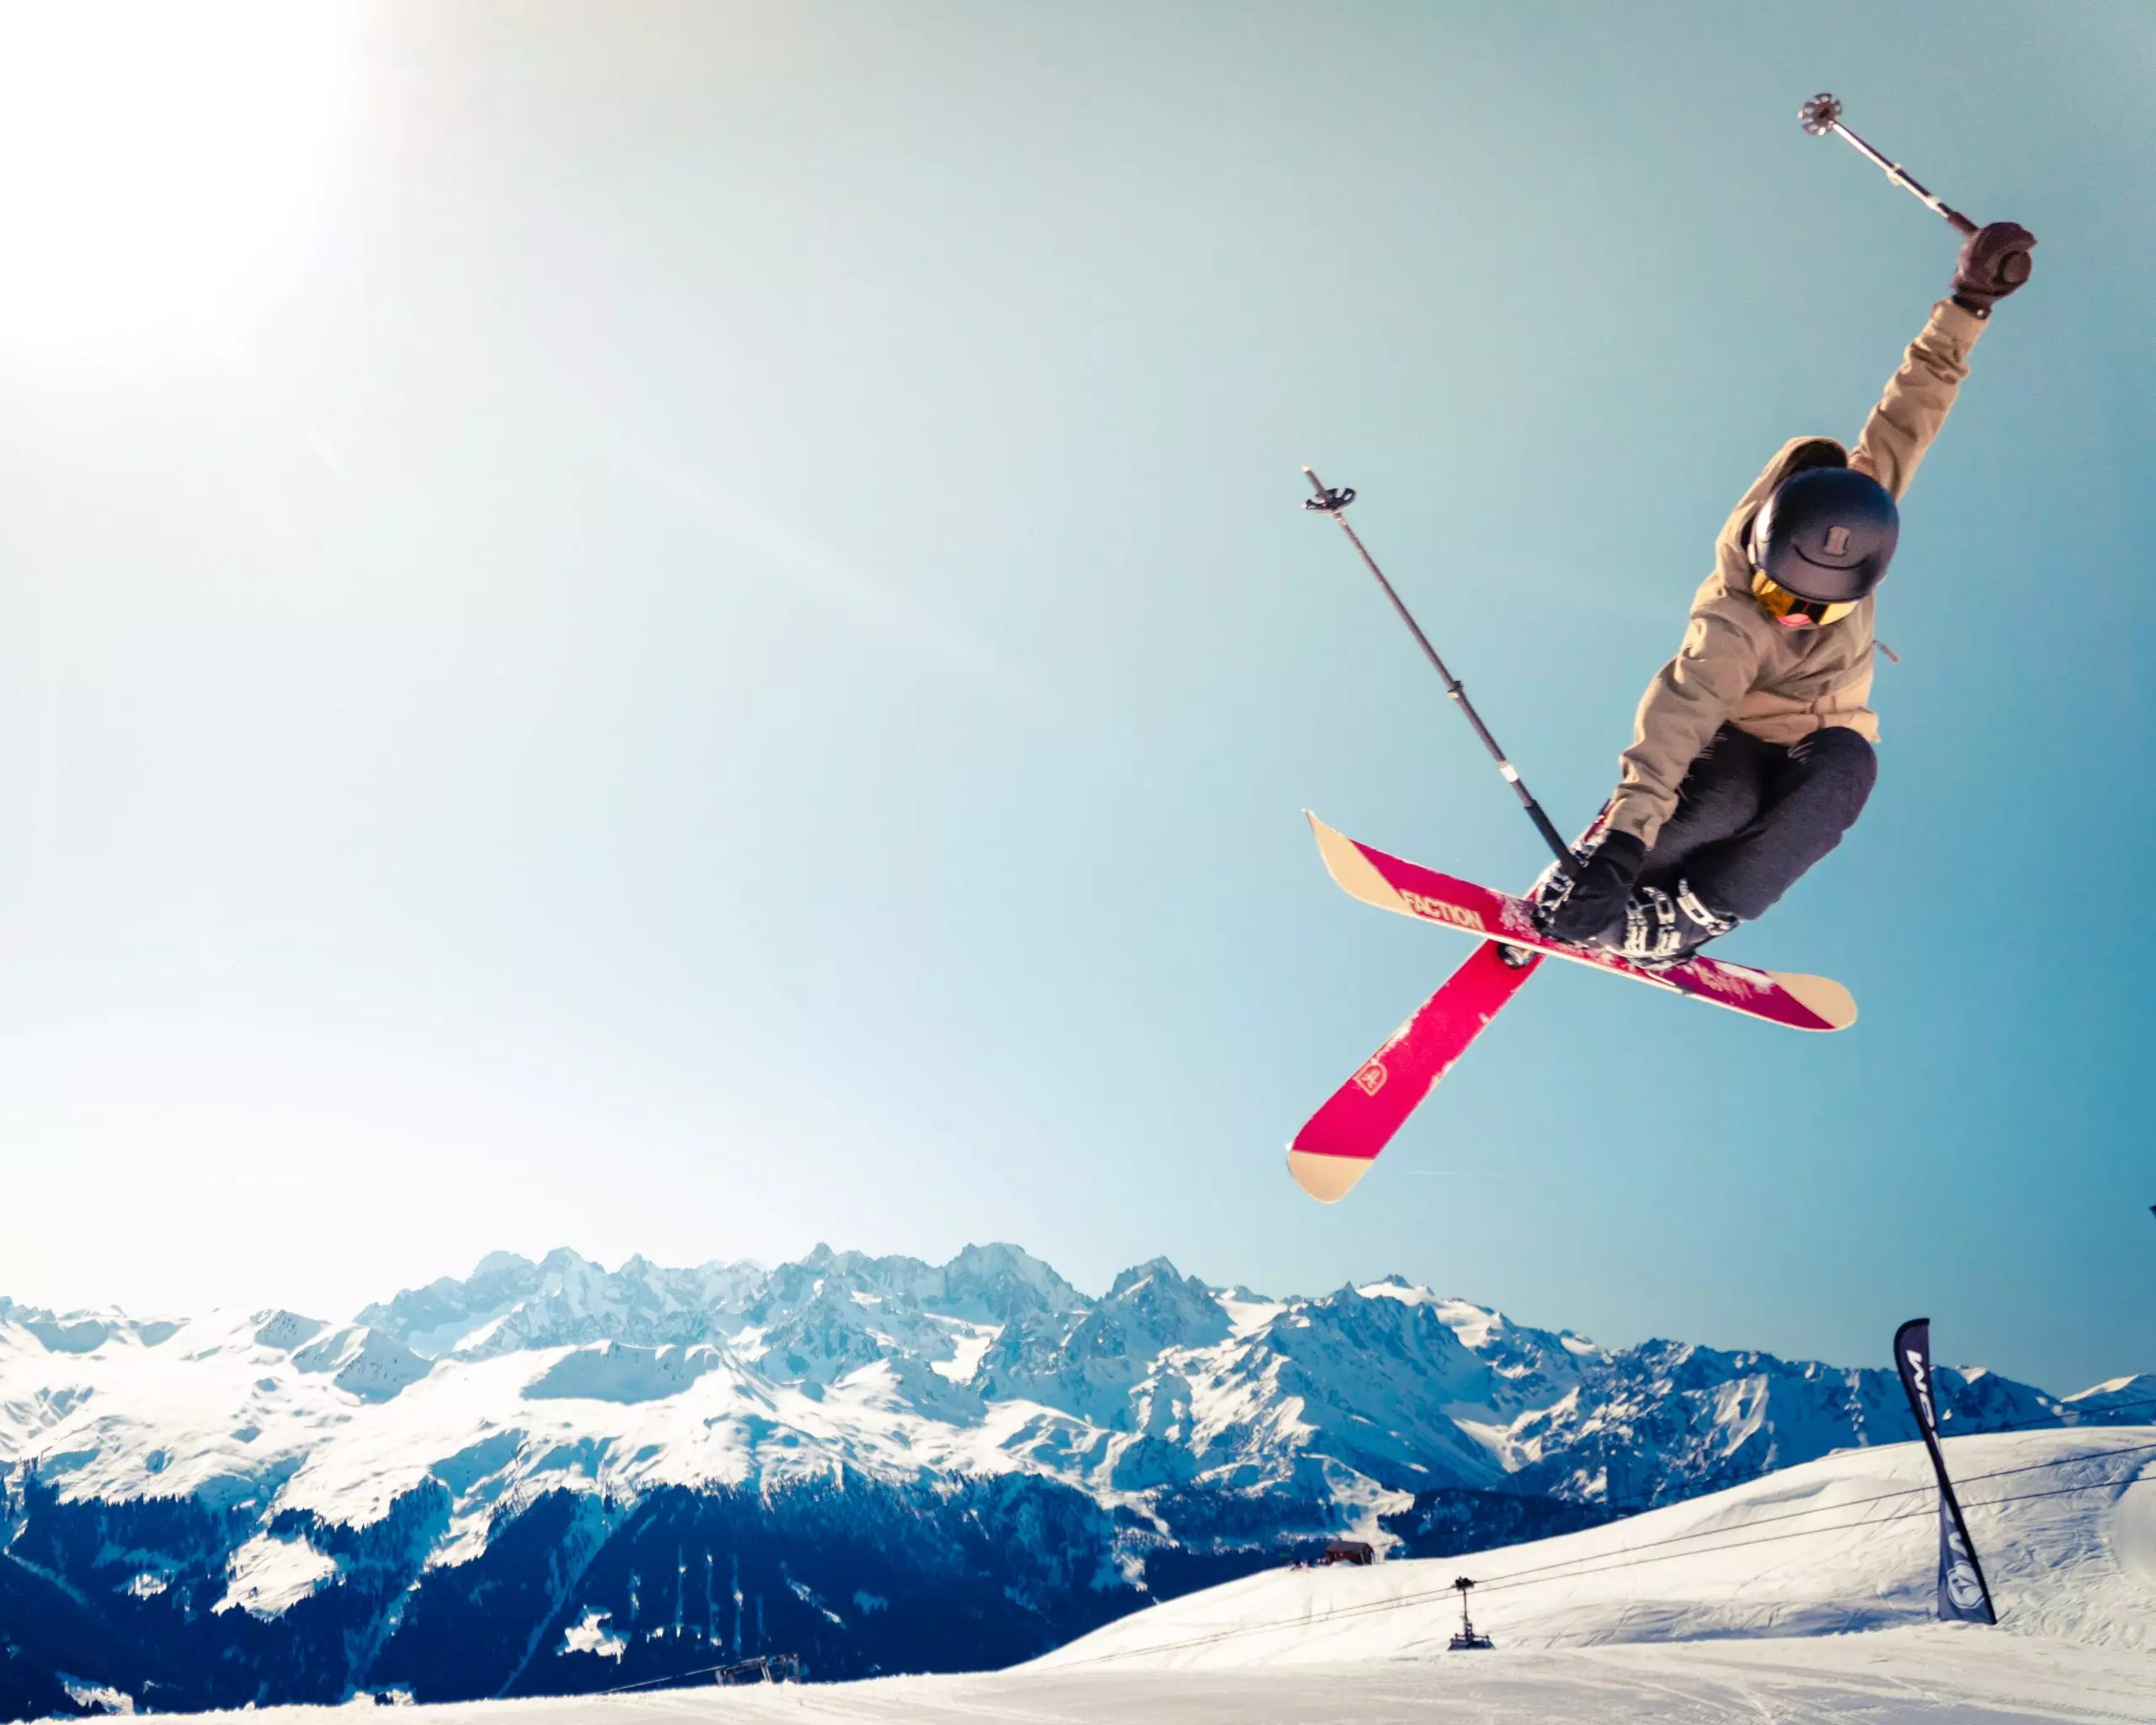 Skiing and ski jumping